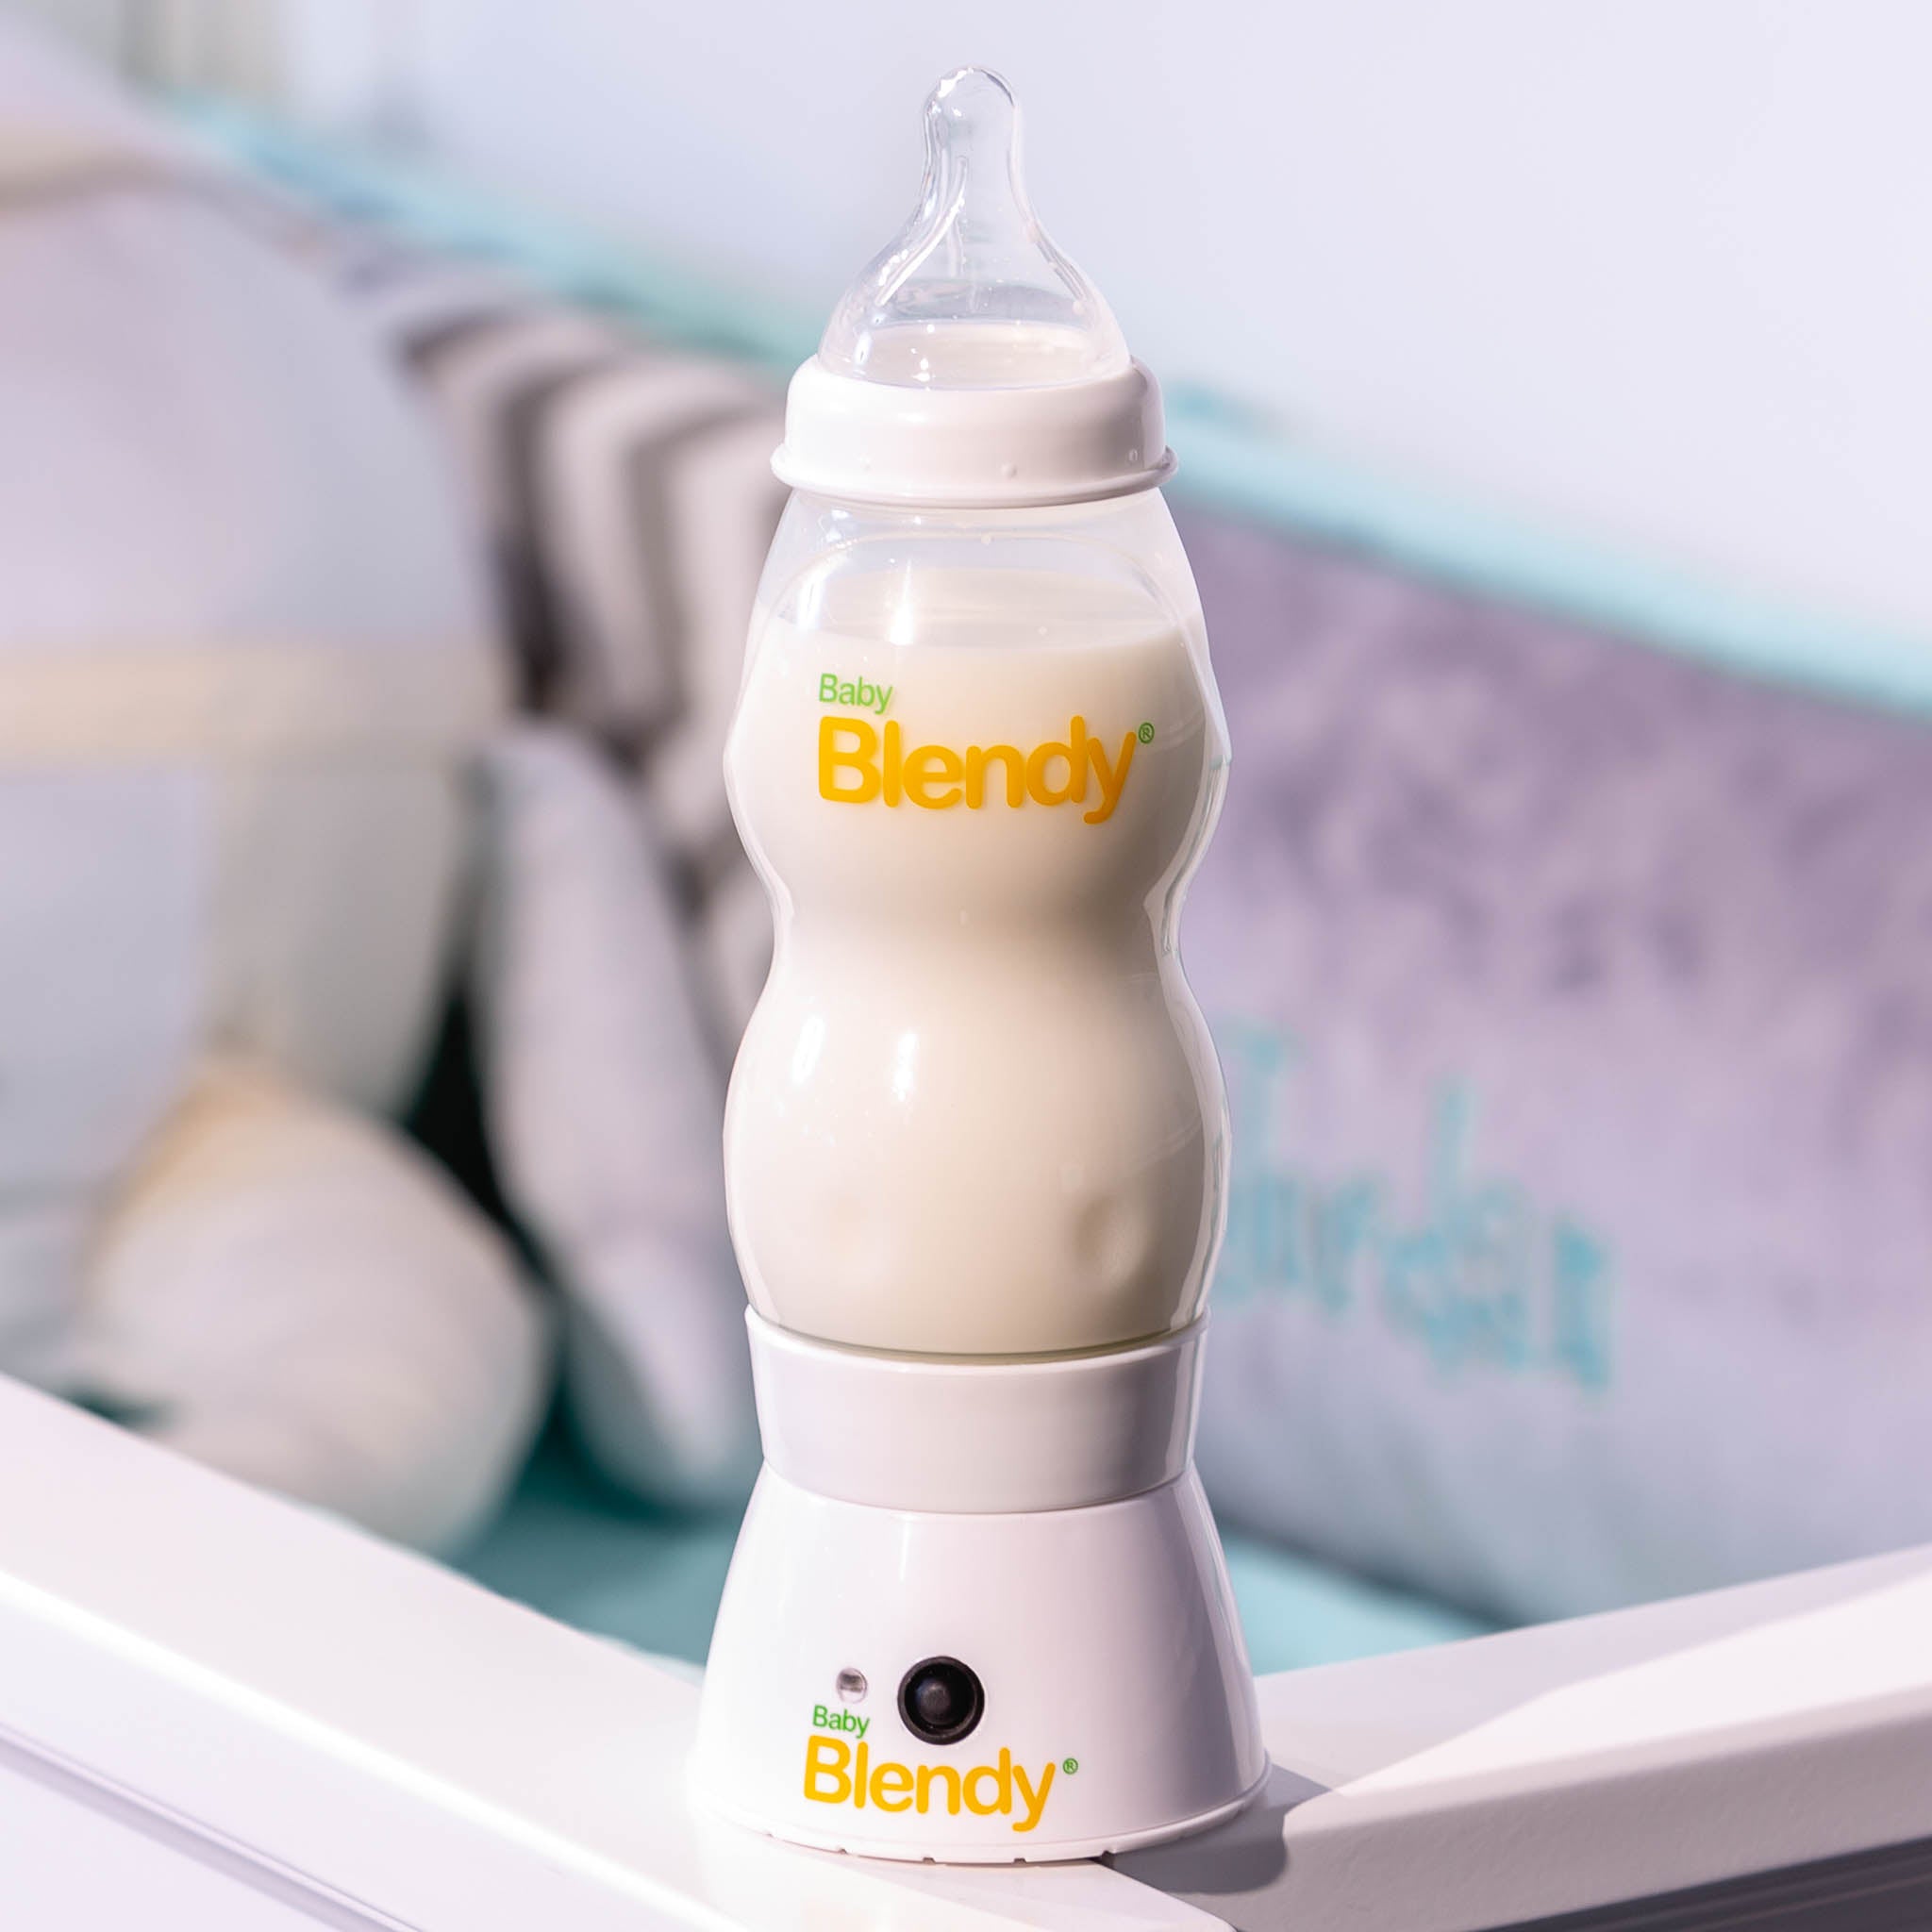 Baby Blendy - The Best Baby Bottle Blender